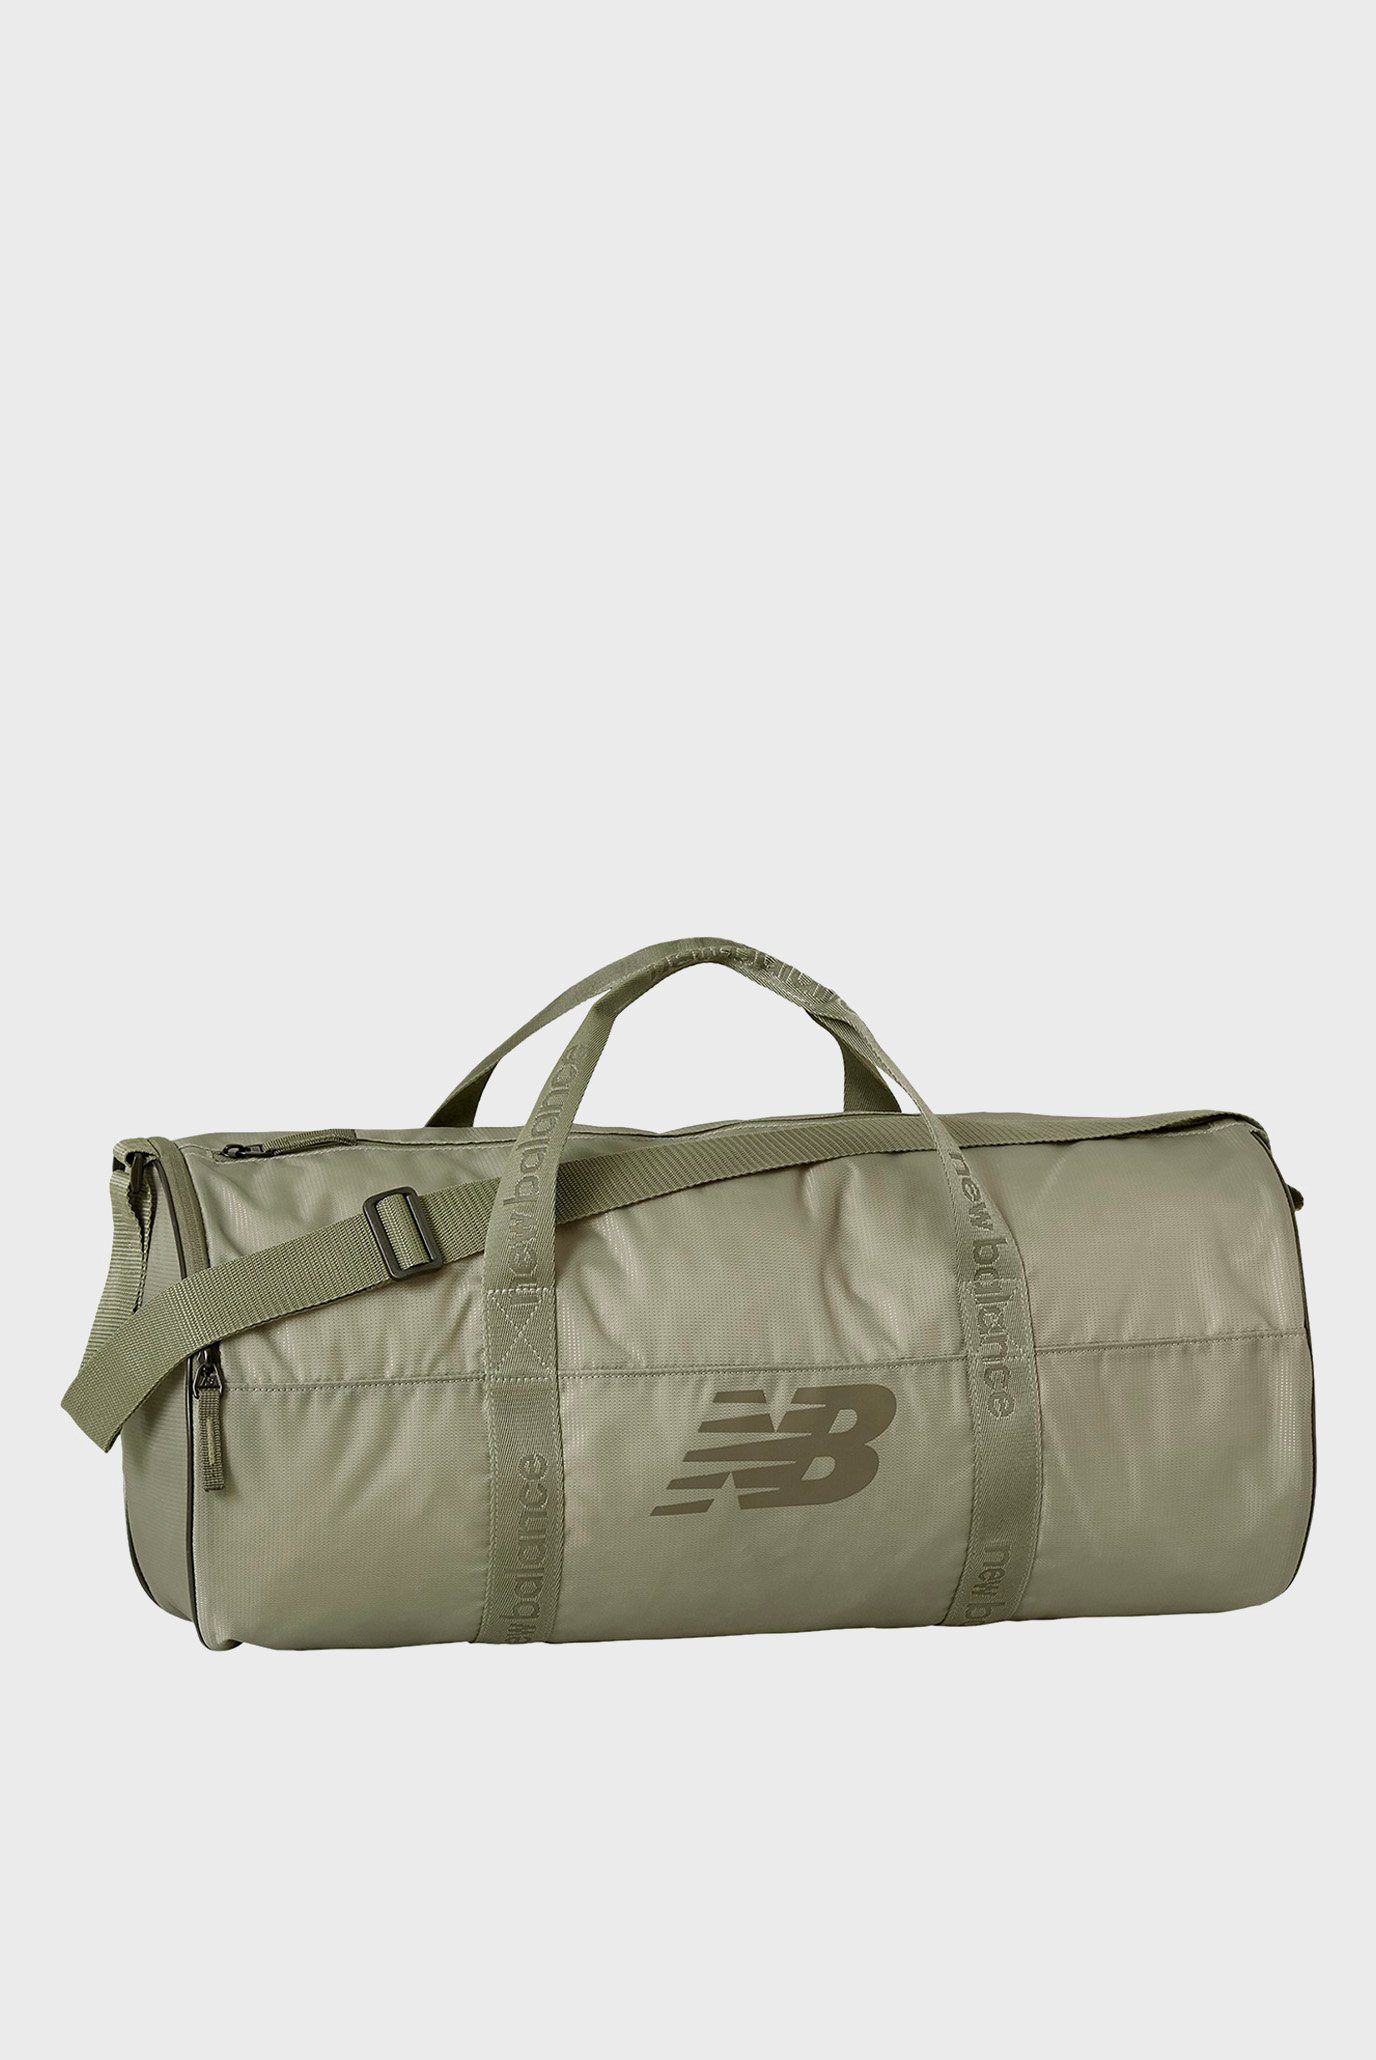 Зелена спортивная сумка Opp Core Medium Duffel 1